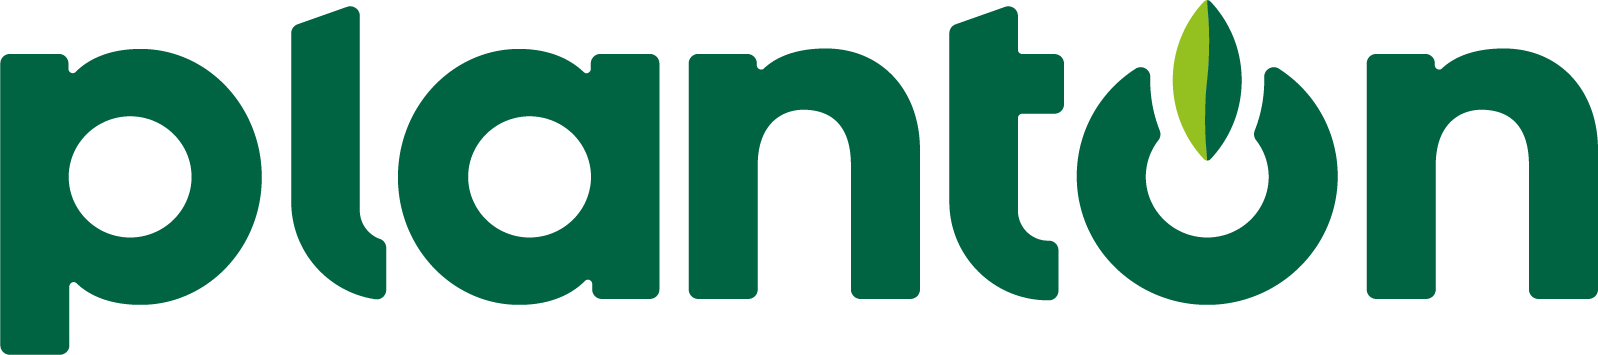 planton-2.0-logo